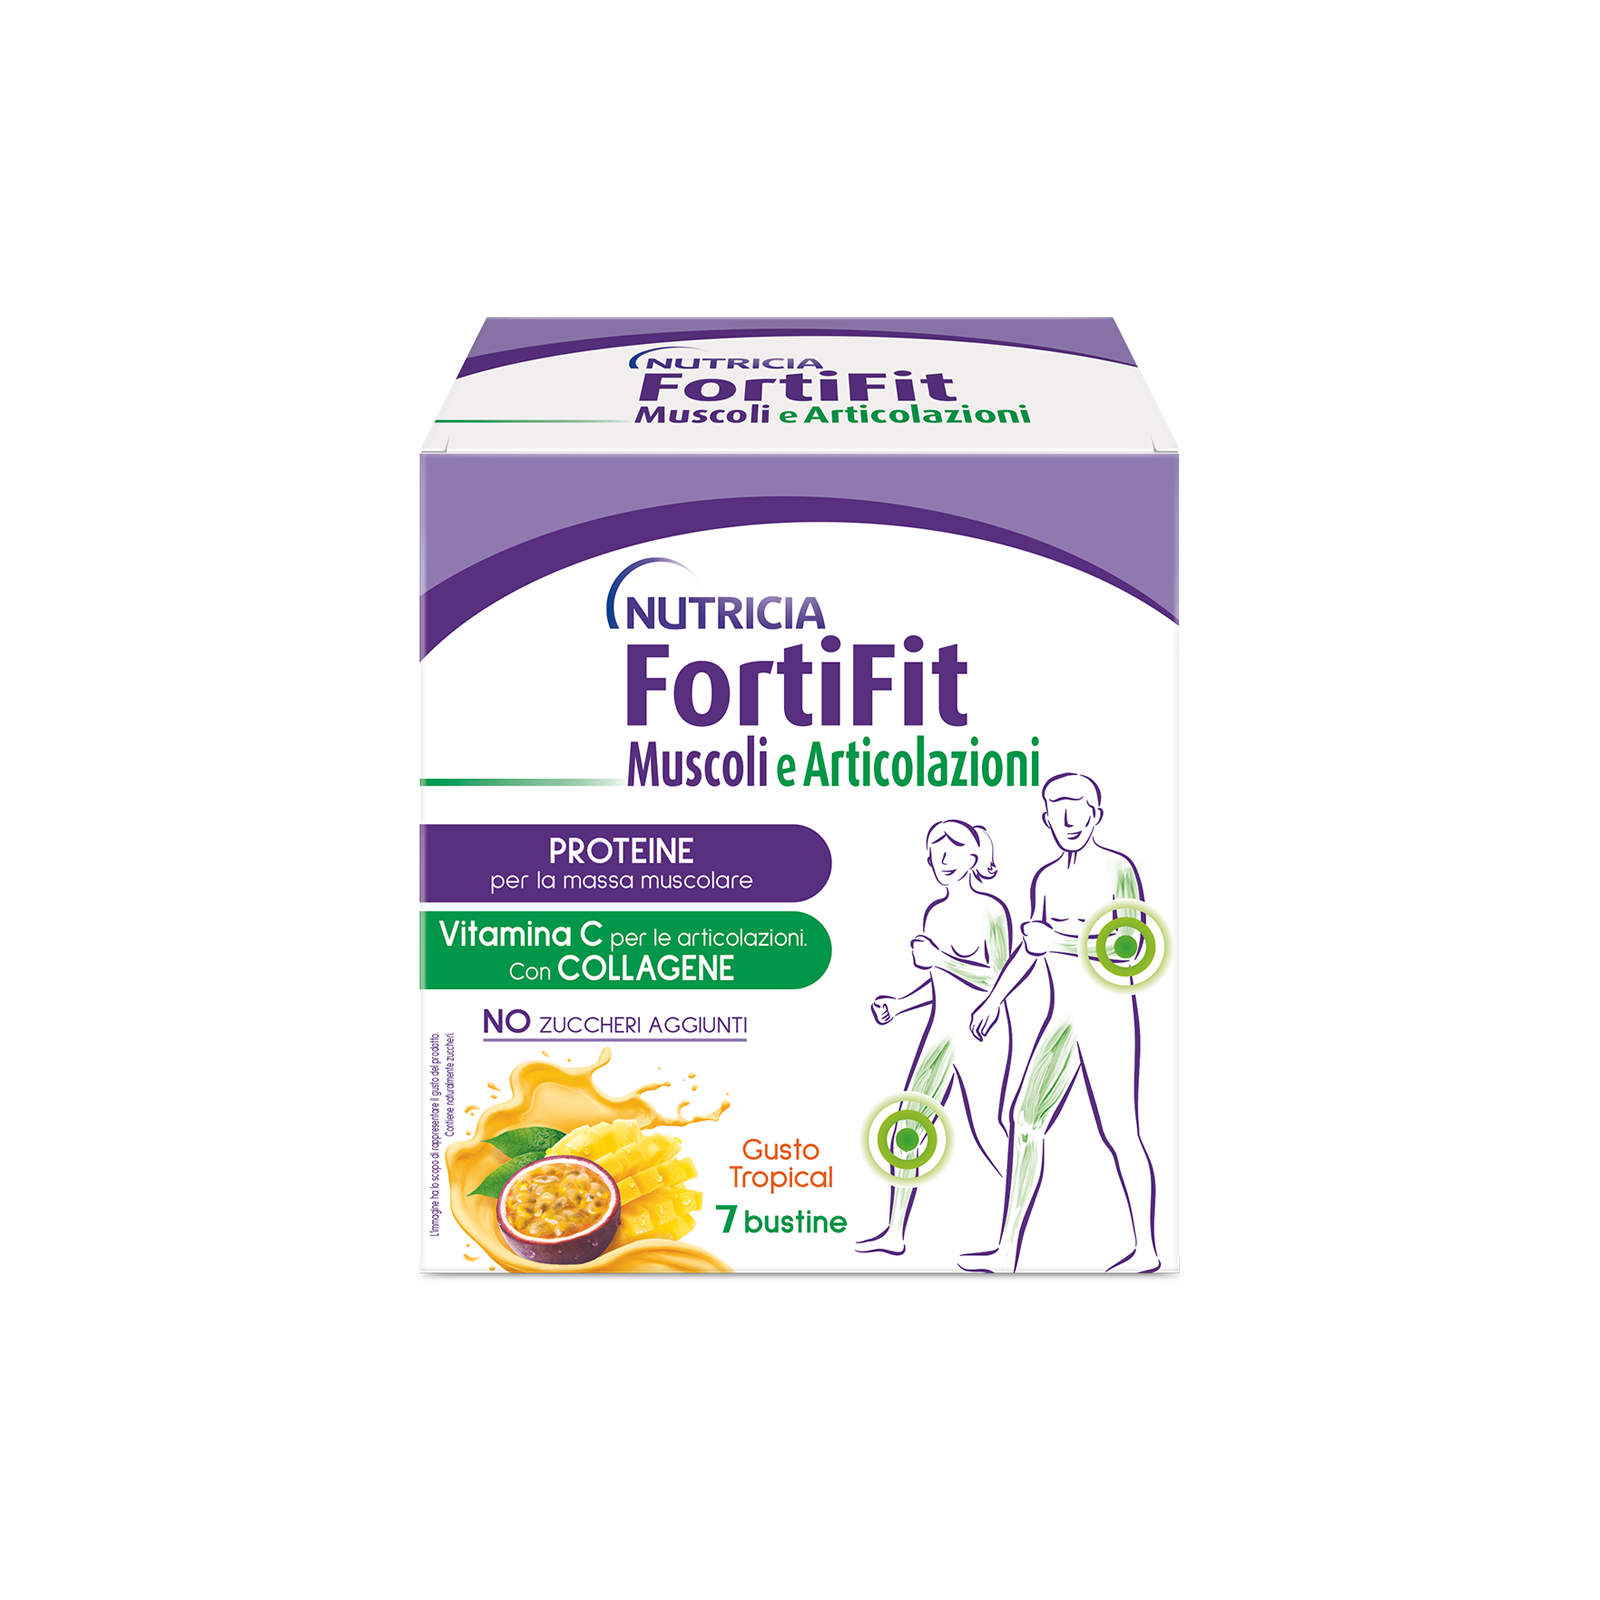 Integratori alimentari - FortiFit Muscoli e Articolazioni Tropical 4 ASTUCCI
, FORTIFIT